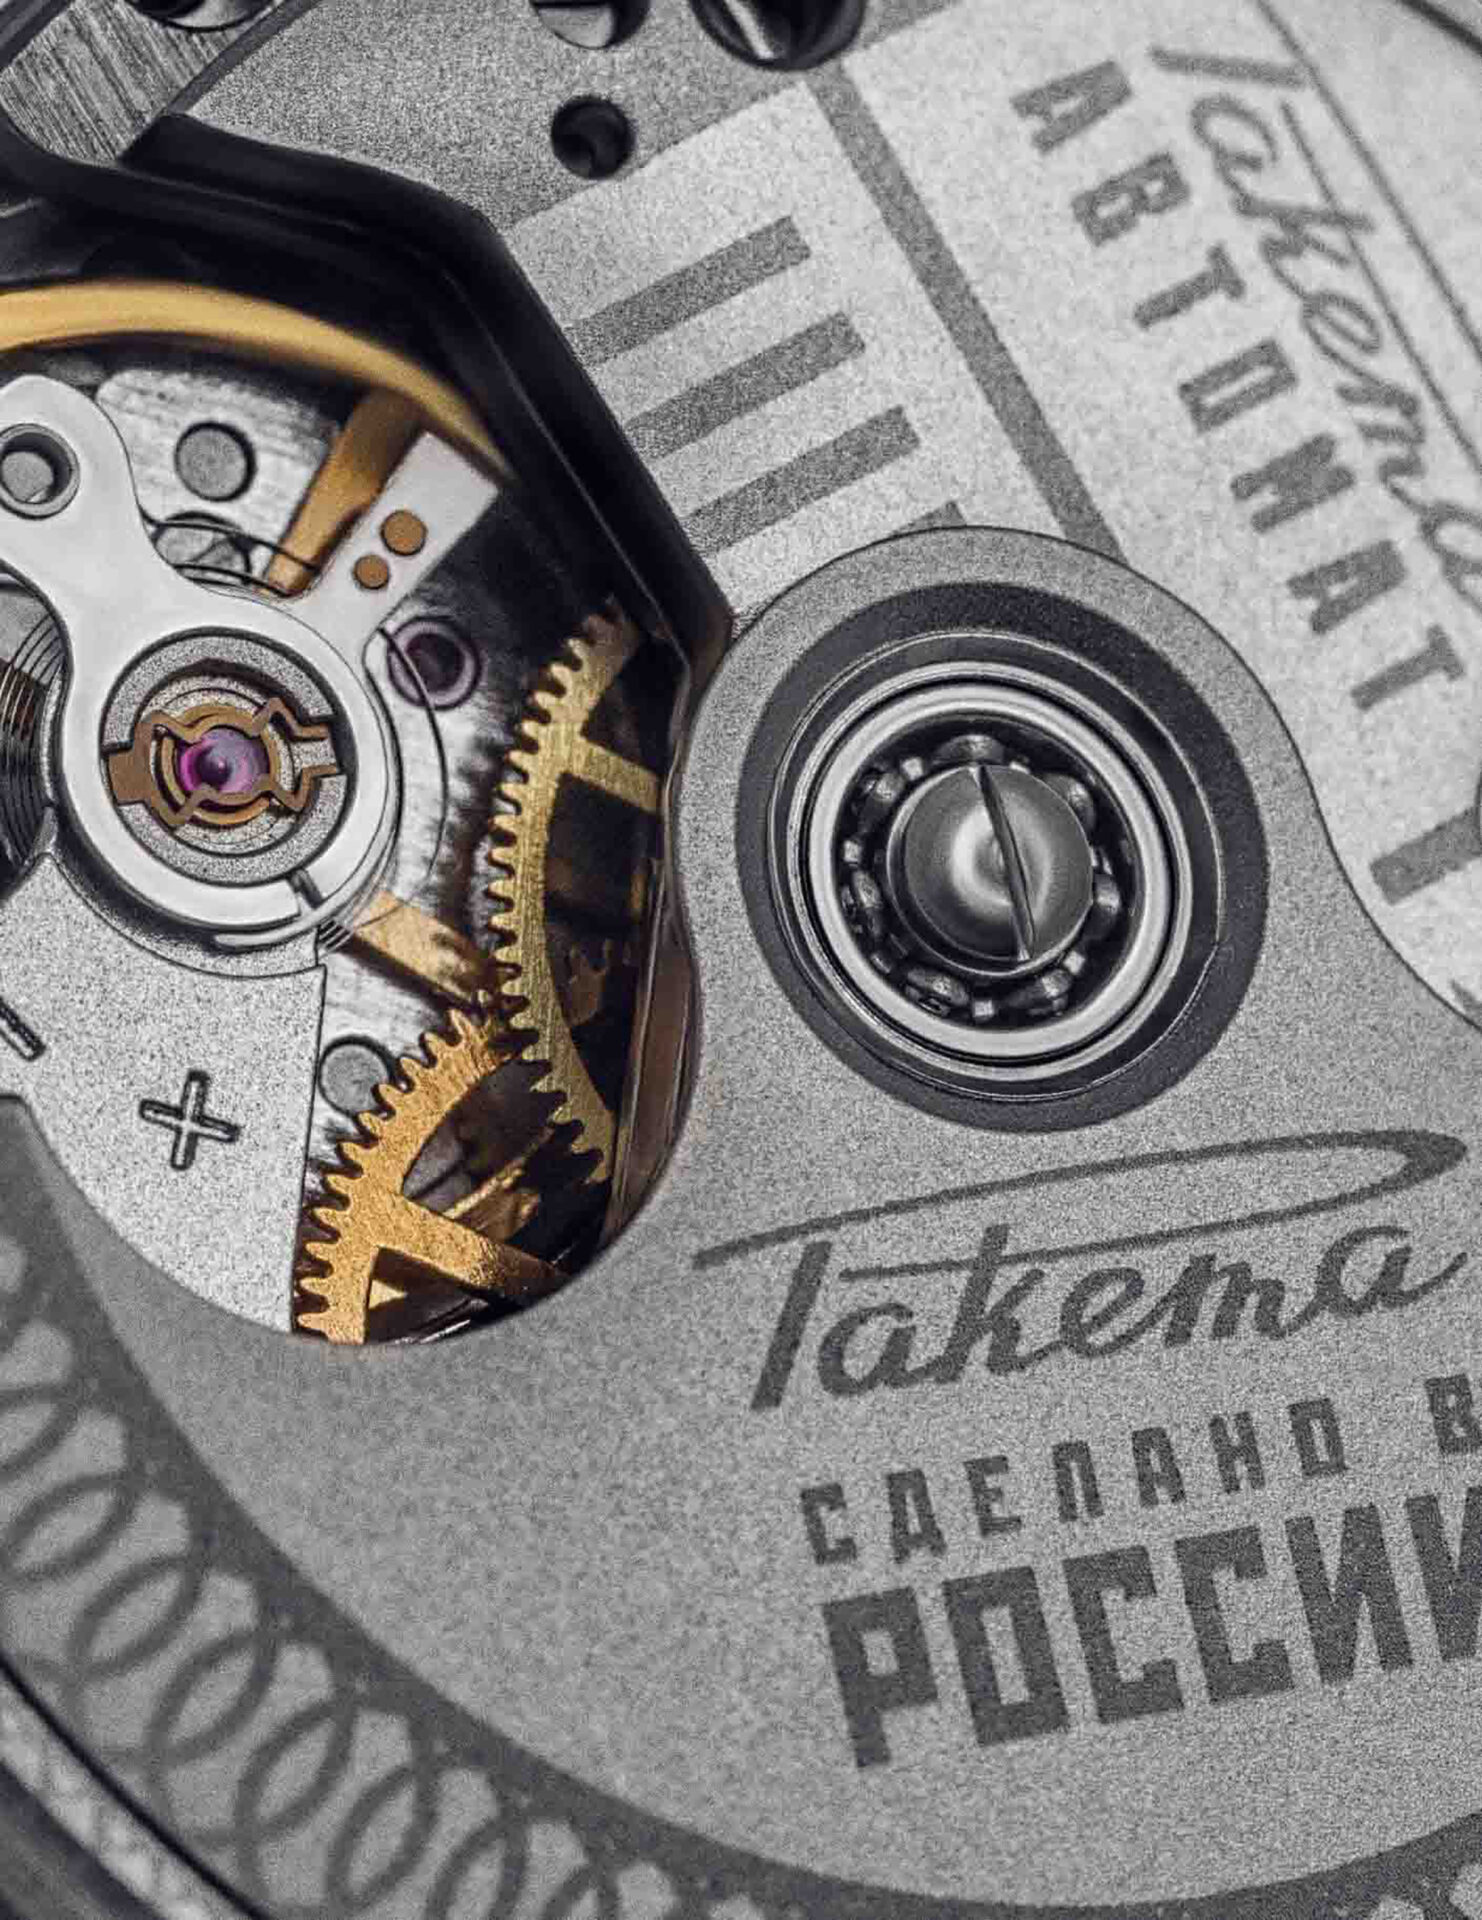 Raketa, la mítica firma de origen soviético, revive con movimientos de producción propia